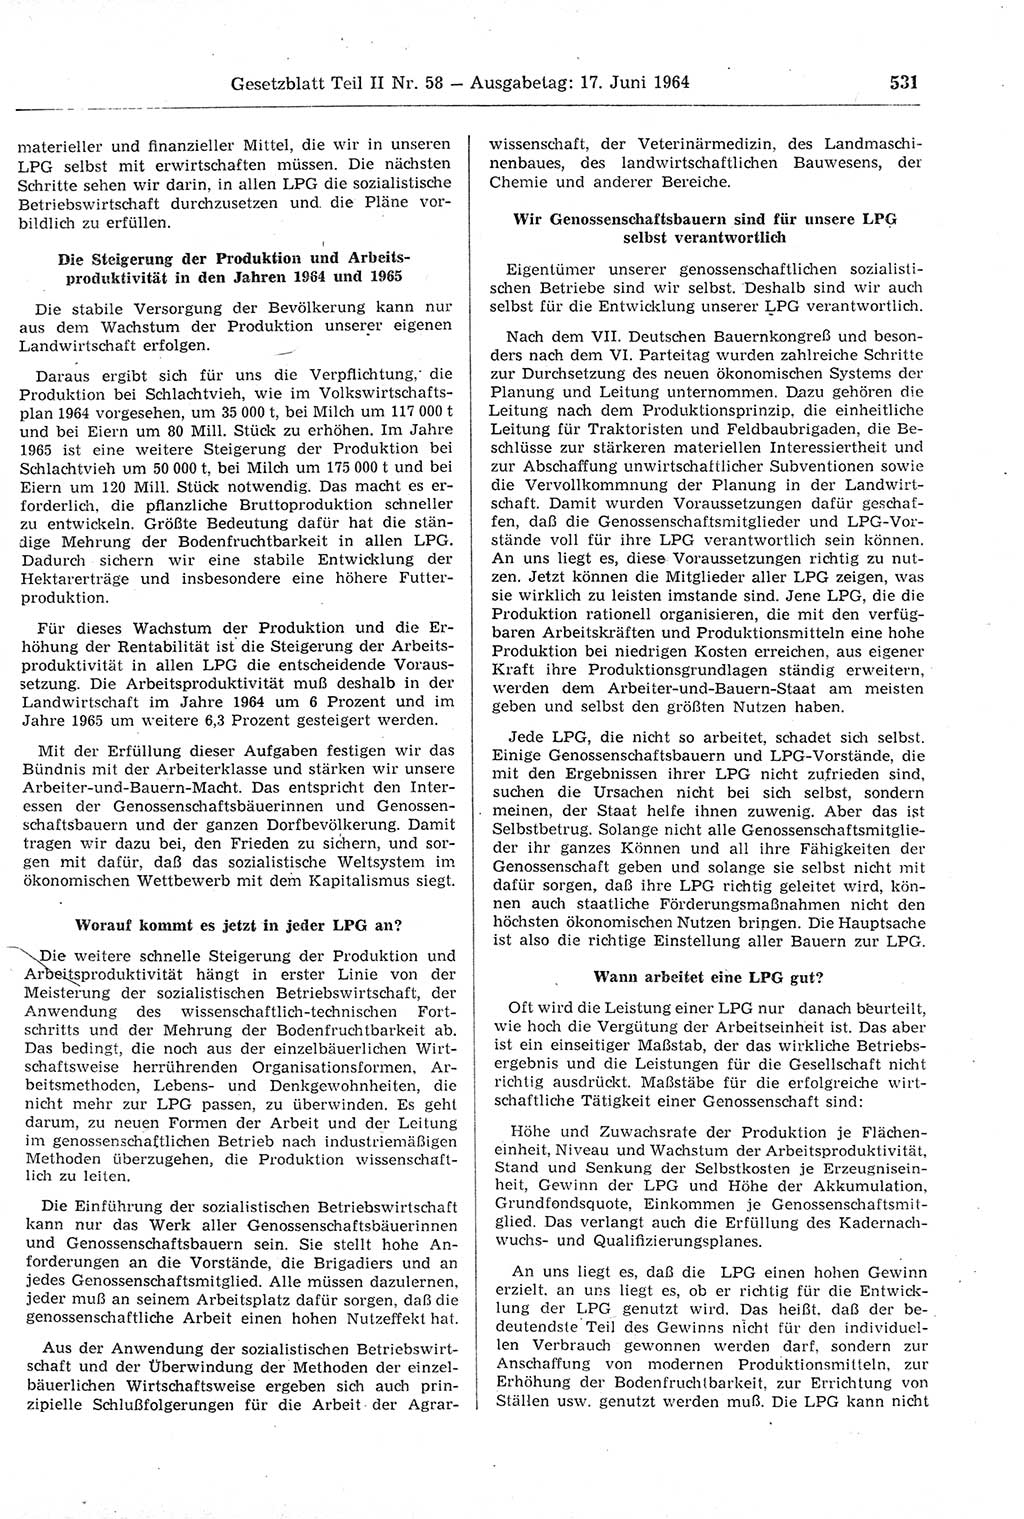 Gesetzblatt (GBl.) der Deutschen Demokratischen Republik (DDR) Teil ⅠⅠ 1964, Seite 531 (GBl. DDR ⅠⅠ 1964, S. 531)